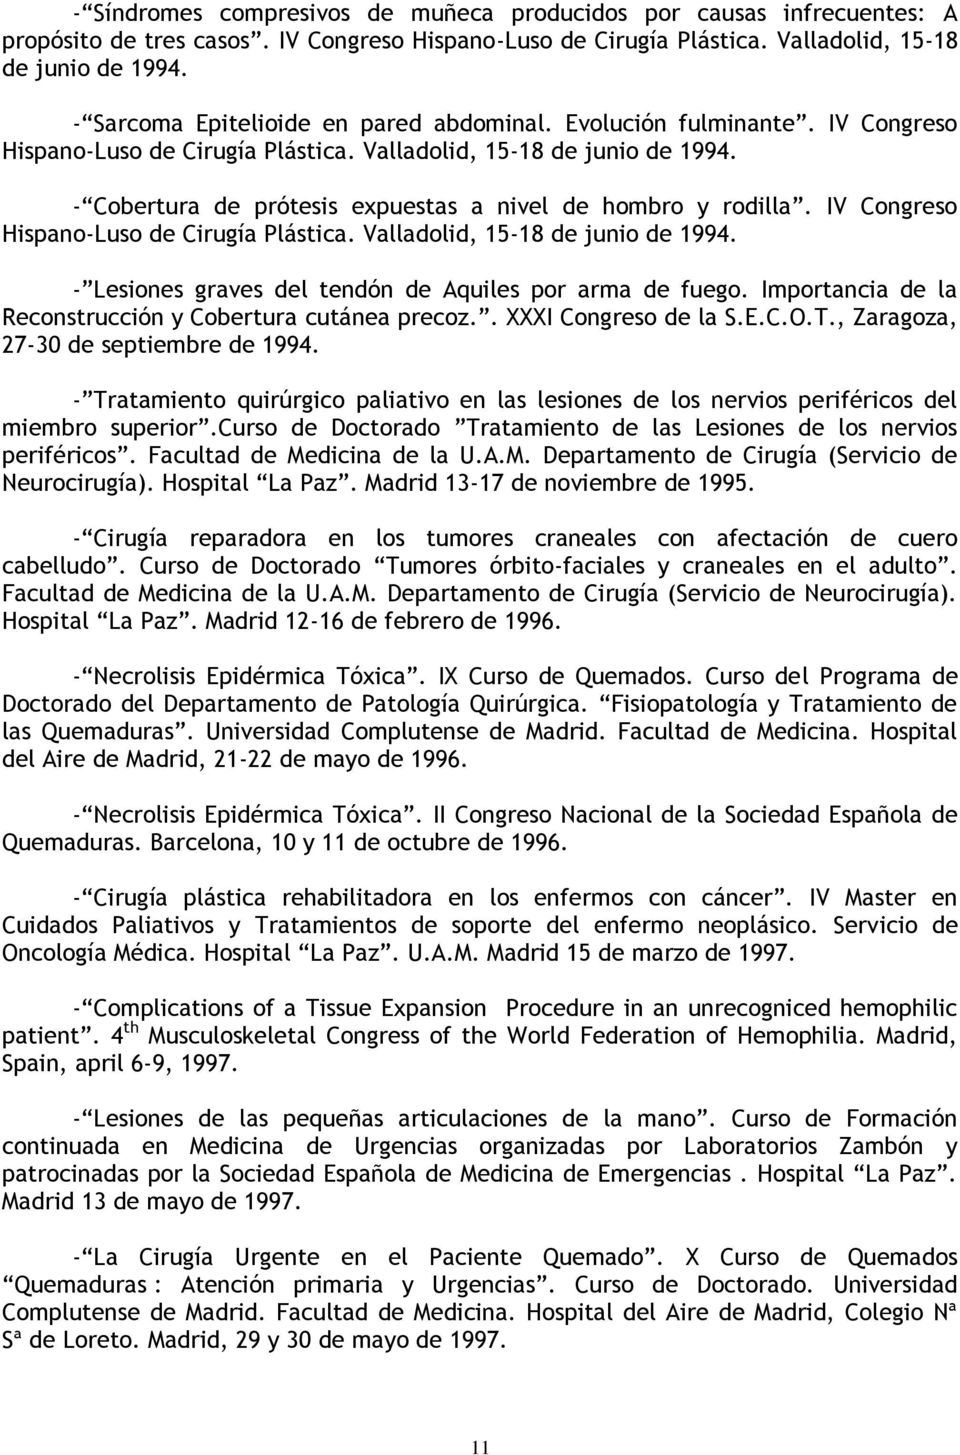 - Cobertura de prótesis expuestas a nivel de hombro y rodilla. IV Congreso Hispano-Luso de Cirugía Plástica. Valladolid, 15-18 de junio de 1994.